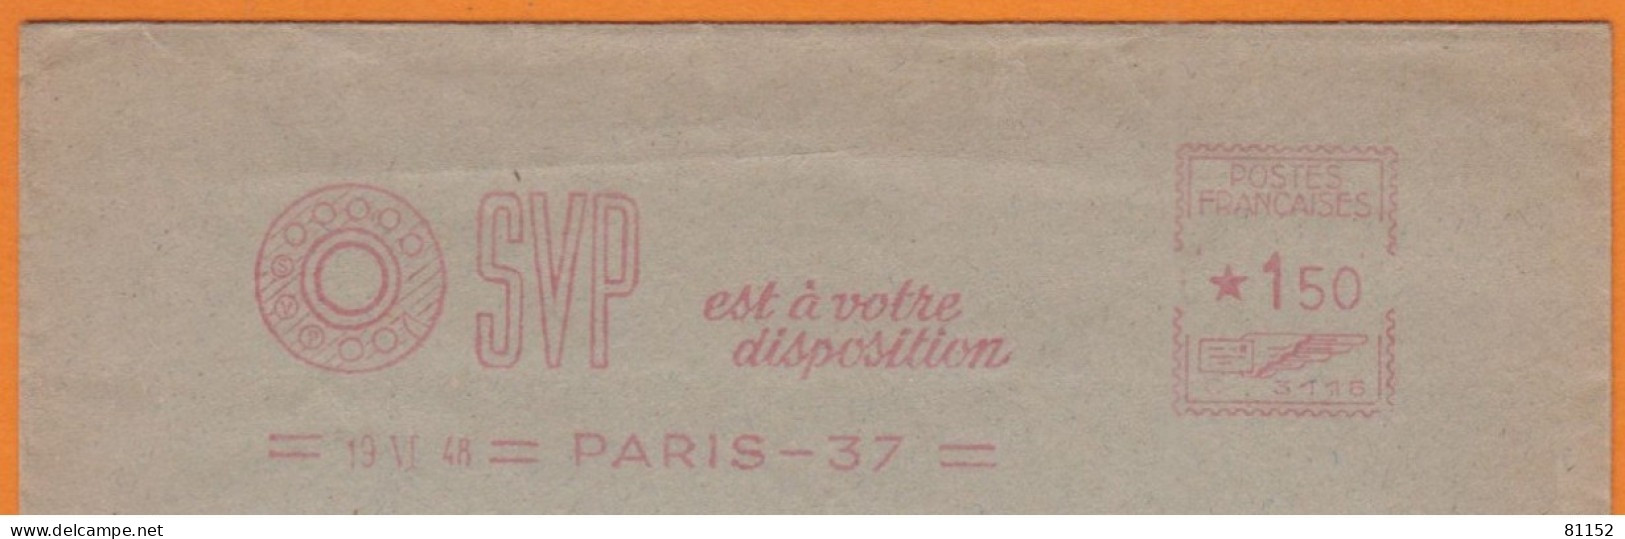 EMA  Sur Lettre De PARIS 37   Année 1948 " SVP Est à Votre Disposition " - EMA ( Maquina De Huellas A Franquear)